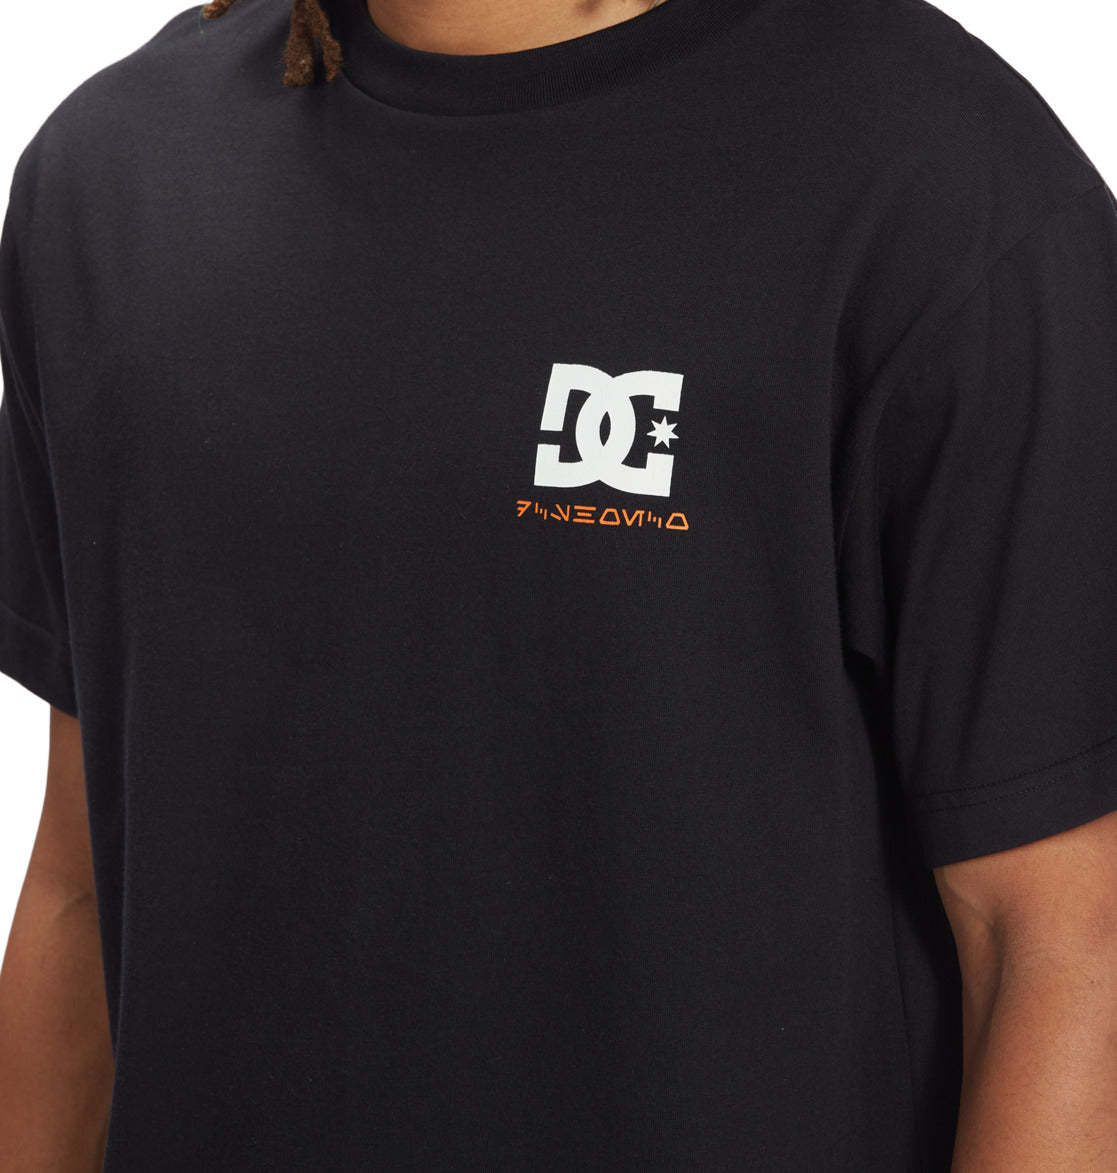 DC SHOES - Star Wars Luke Class T-shirt